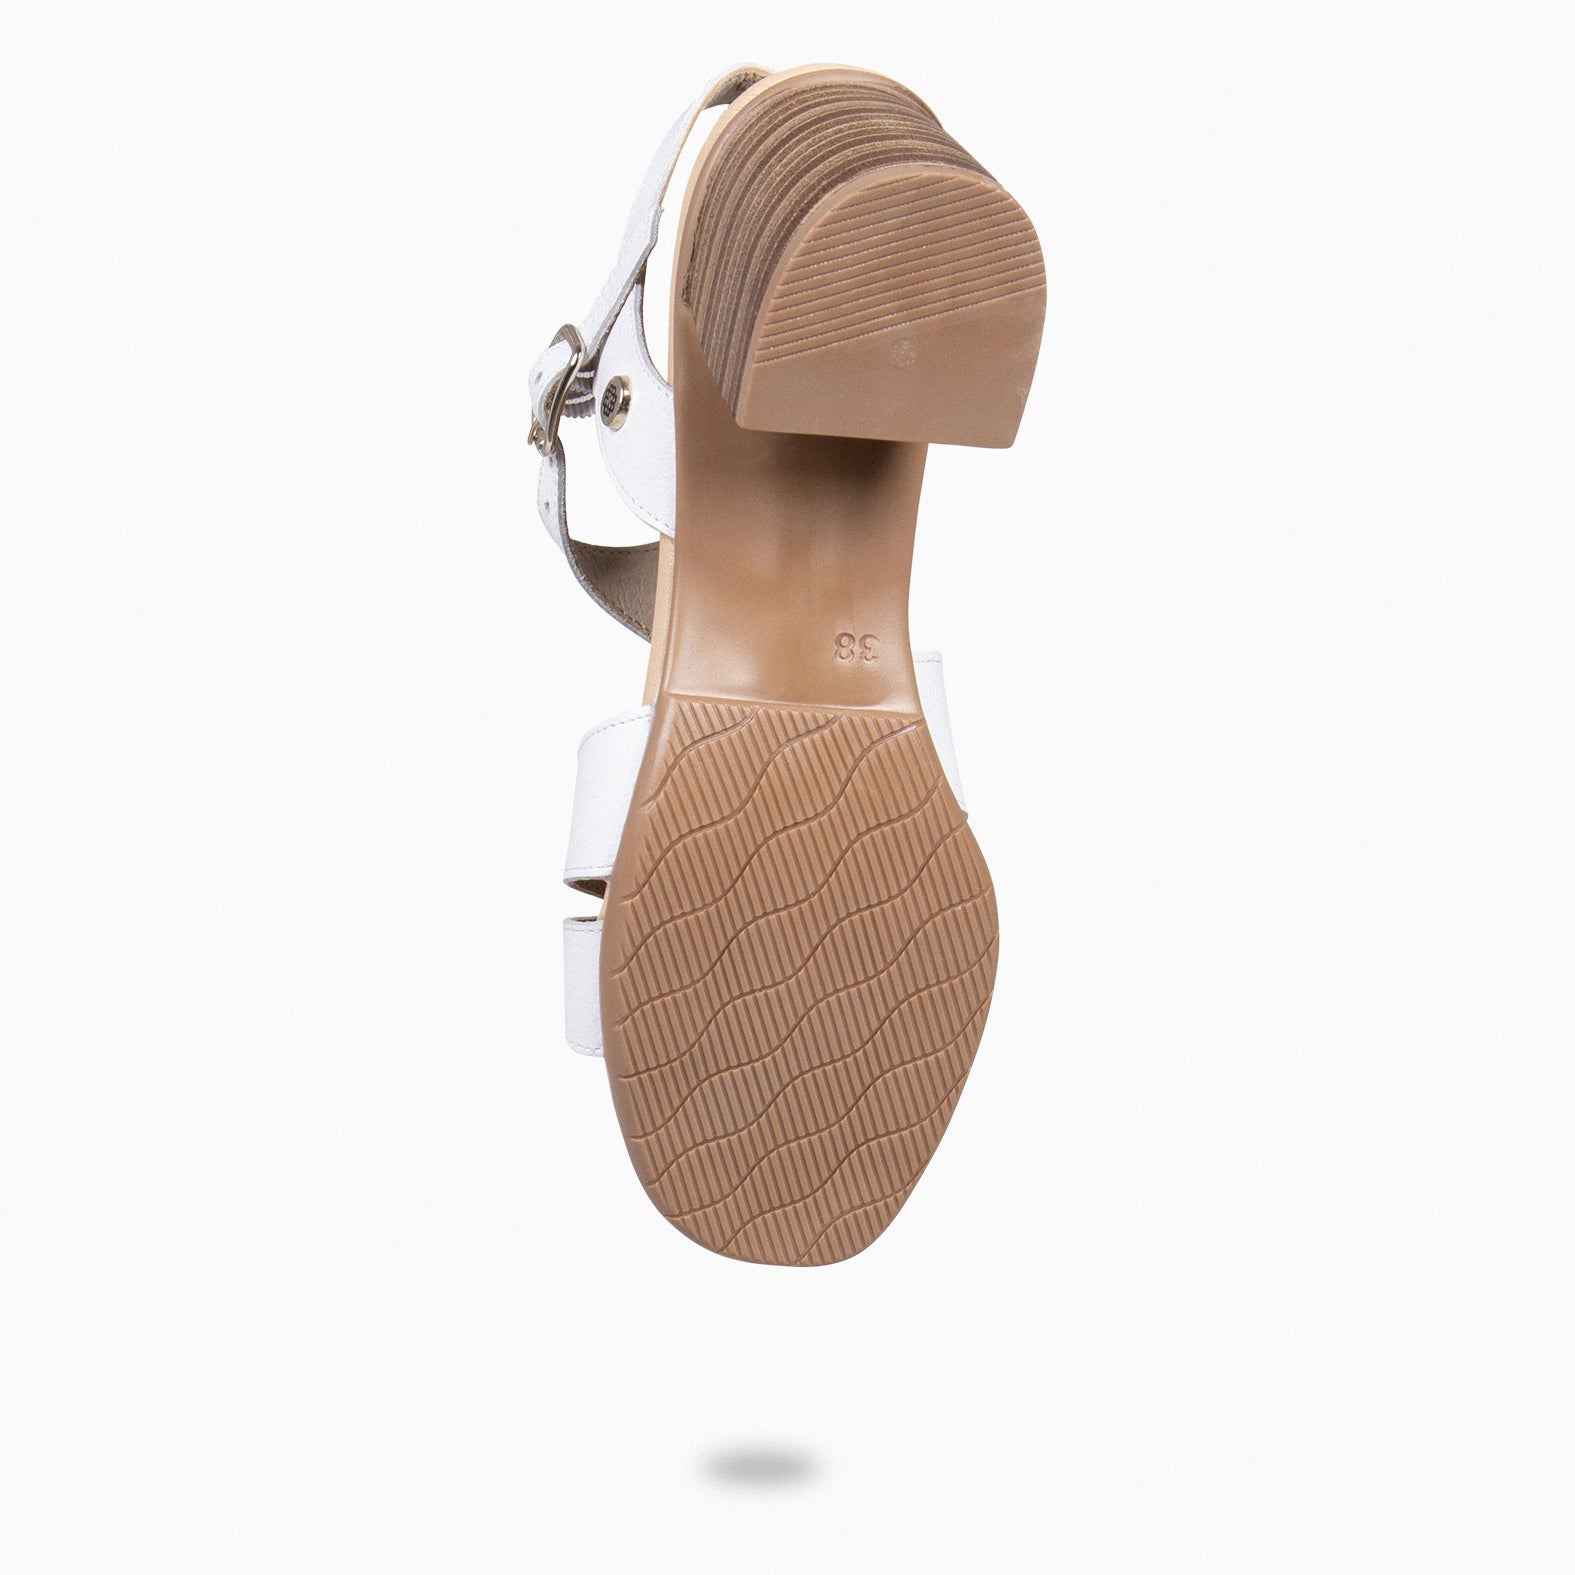 ESTRELLA – WHITE wide-heeled sandals